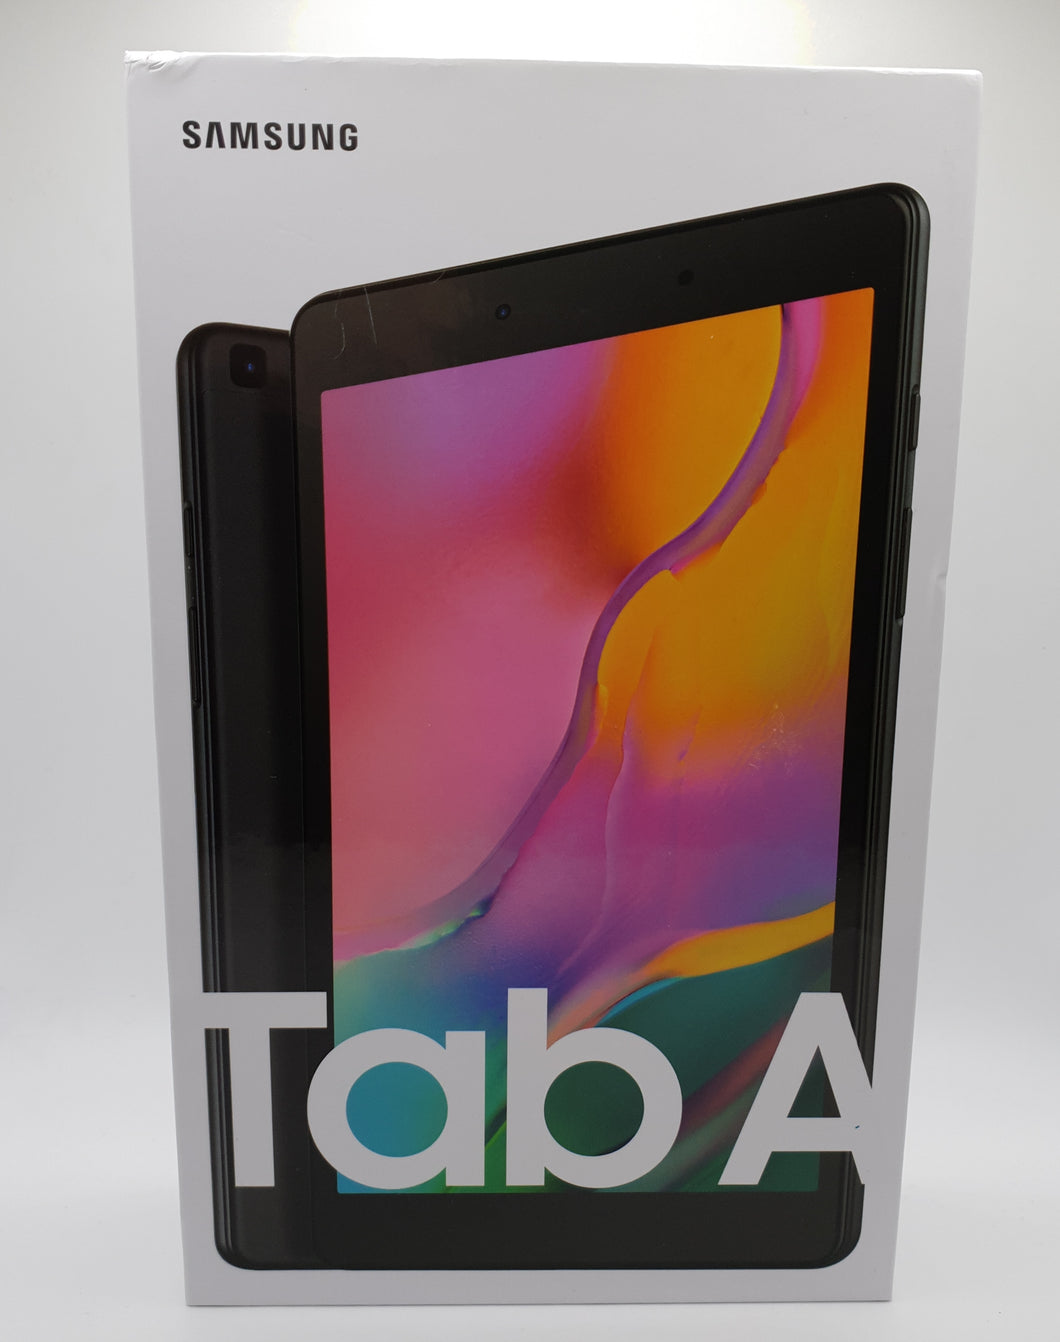 Samsung Galaxy Tab A T290 8inch 32GB Tablet Black Wifi New In Box